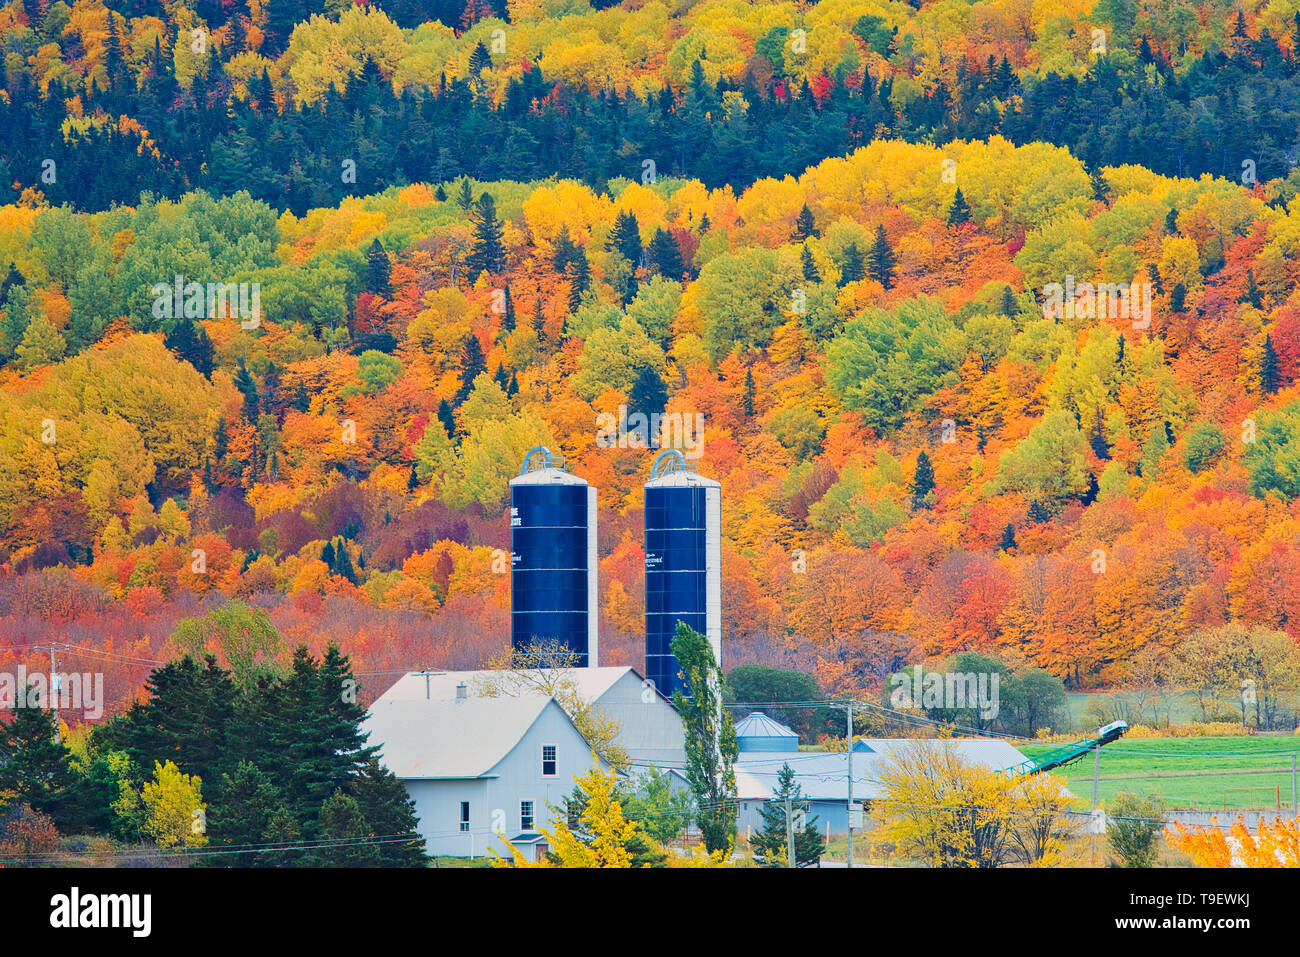 Ferme et couleurs d'automne de la forêt mixte dans les Monts Notre-Dame (Appalaches). Grands Lacs - Fleuve Saint-Laurent région forestière. Saint-Pacôme Québec Canada Banque D'Images